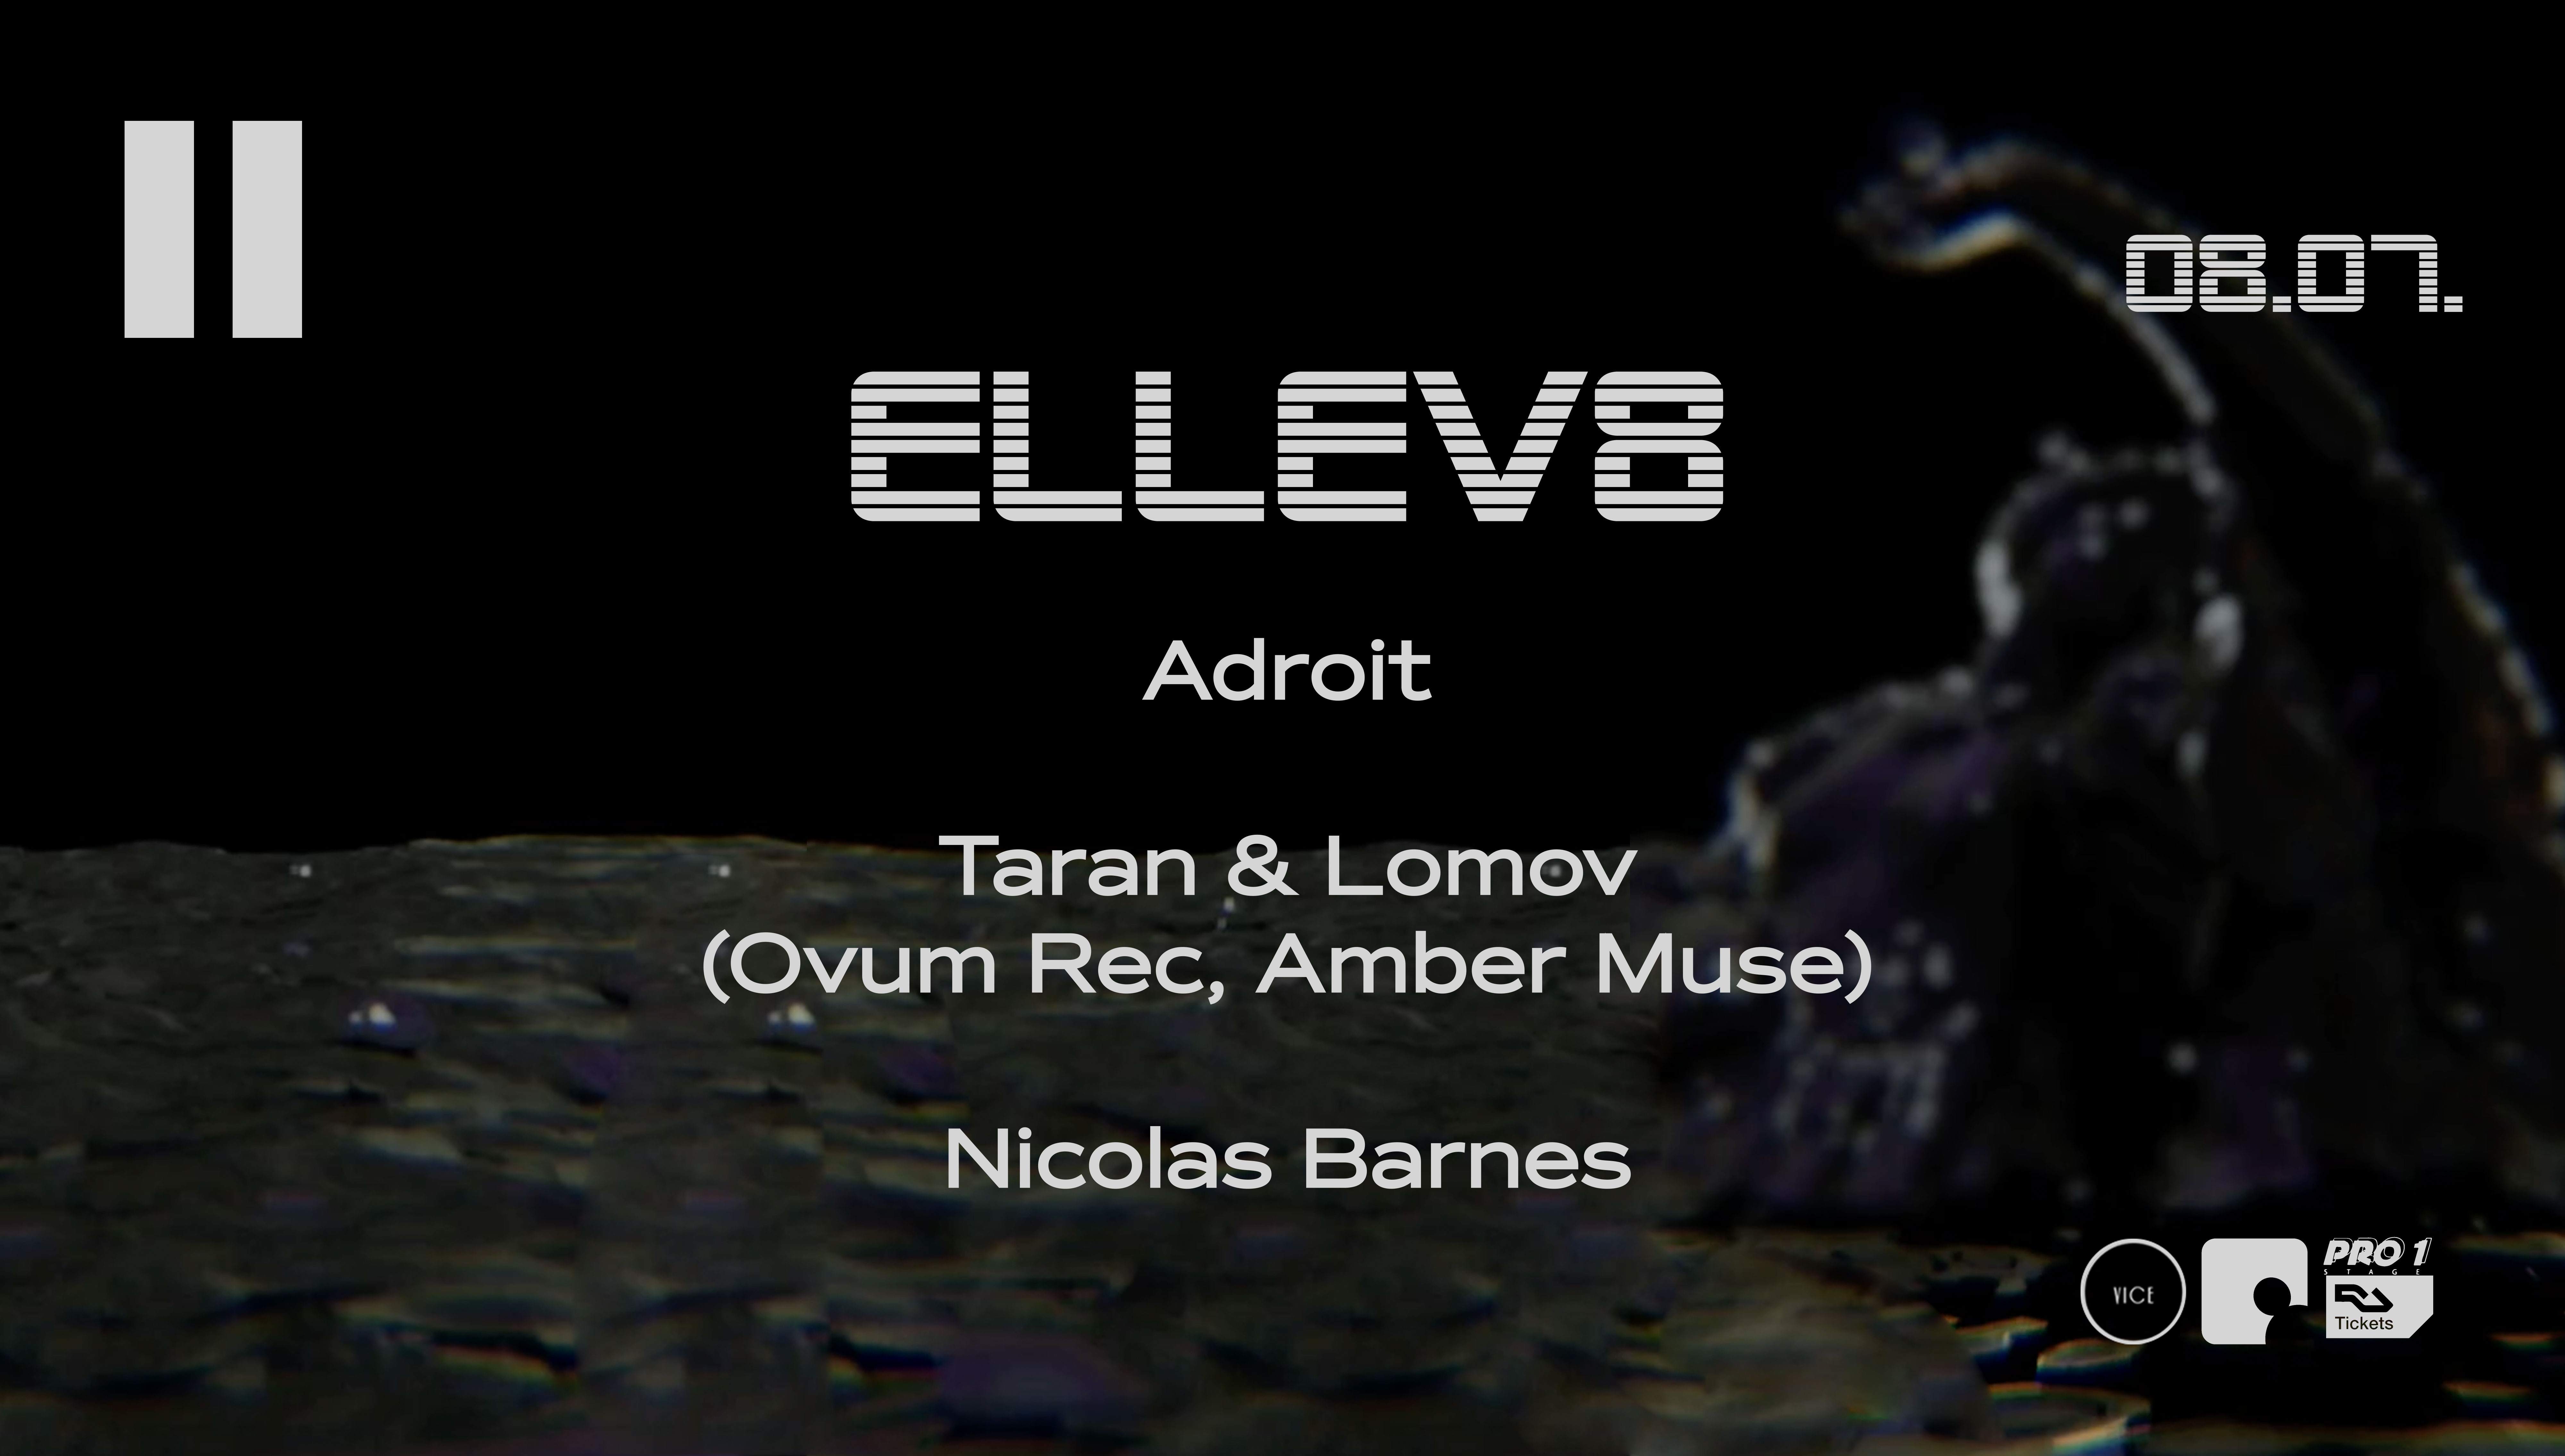 ELLEV8 with Taran & Lomov, Adroit, Nicolas Barnes - フライヤー表